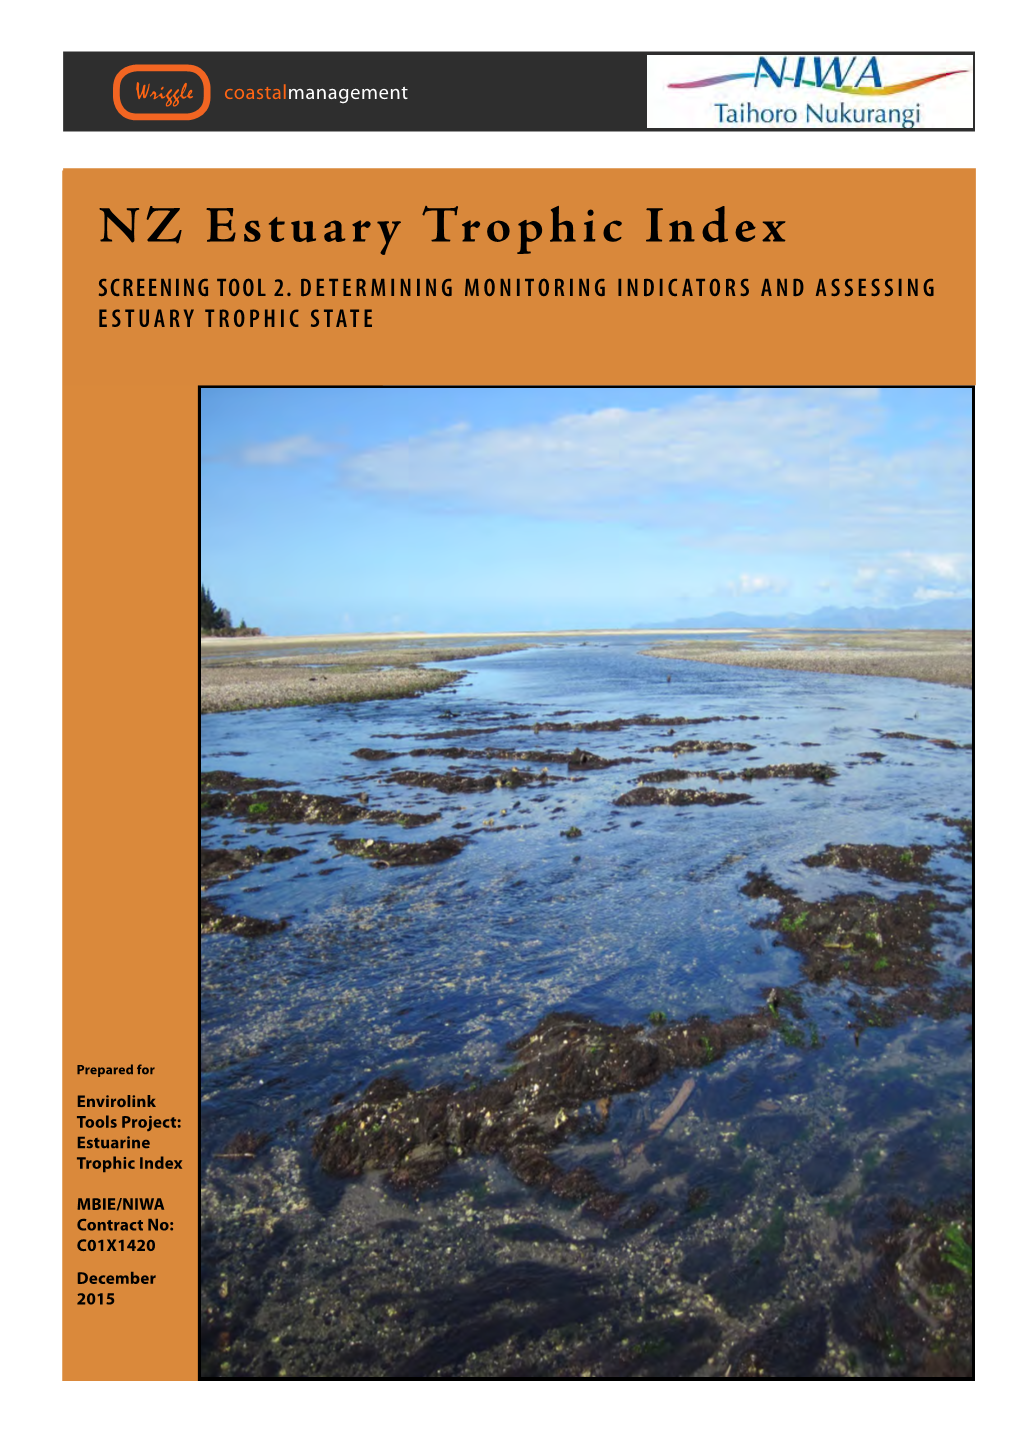 NZ Estuary Trophic Index SCREENING Tool 2